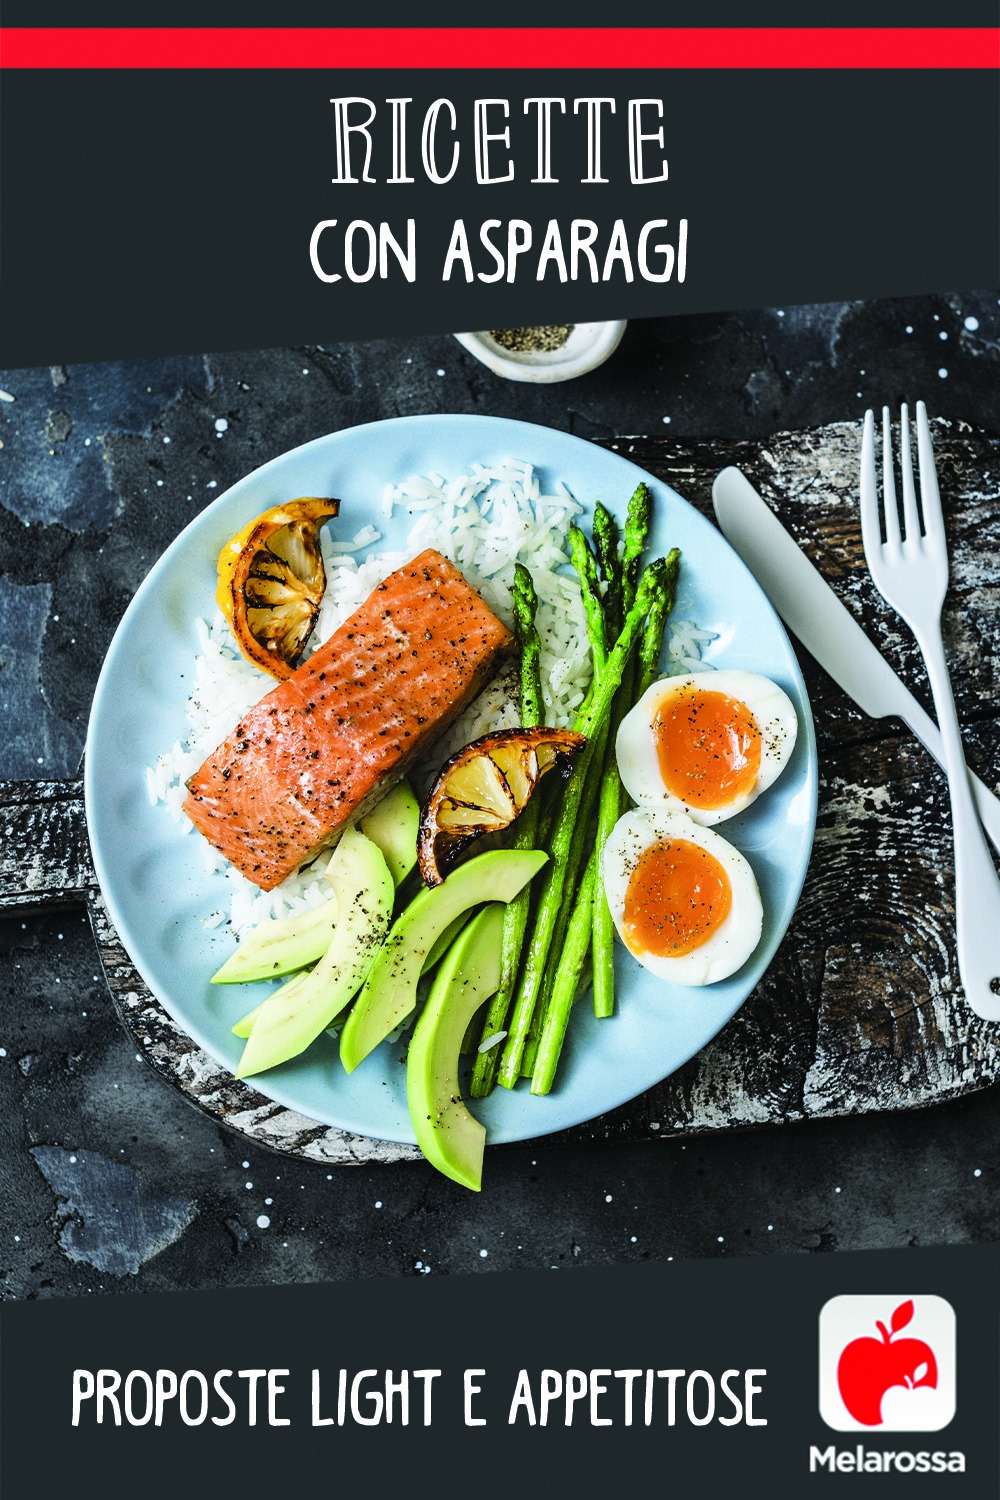 Ricette con asparagi: proposte light e appetitose